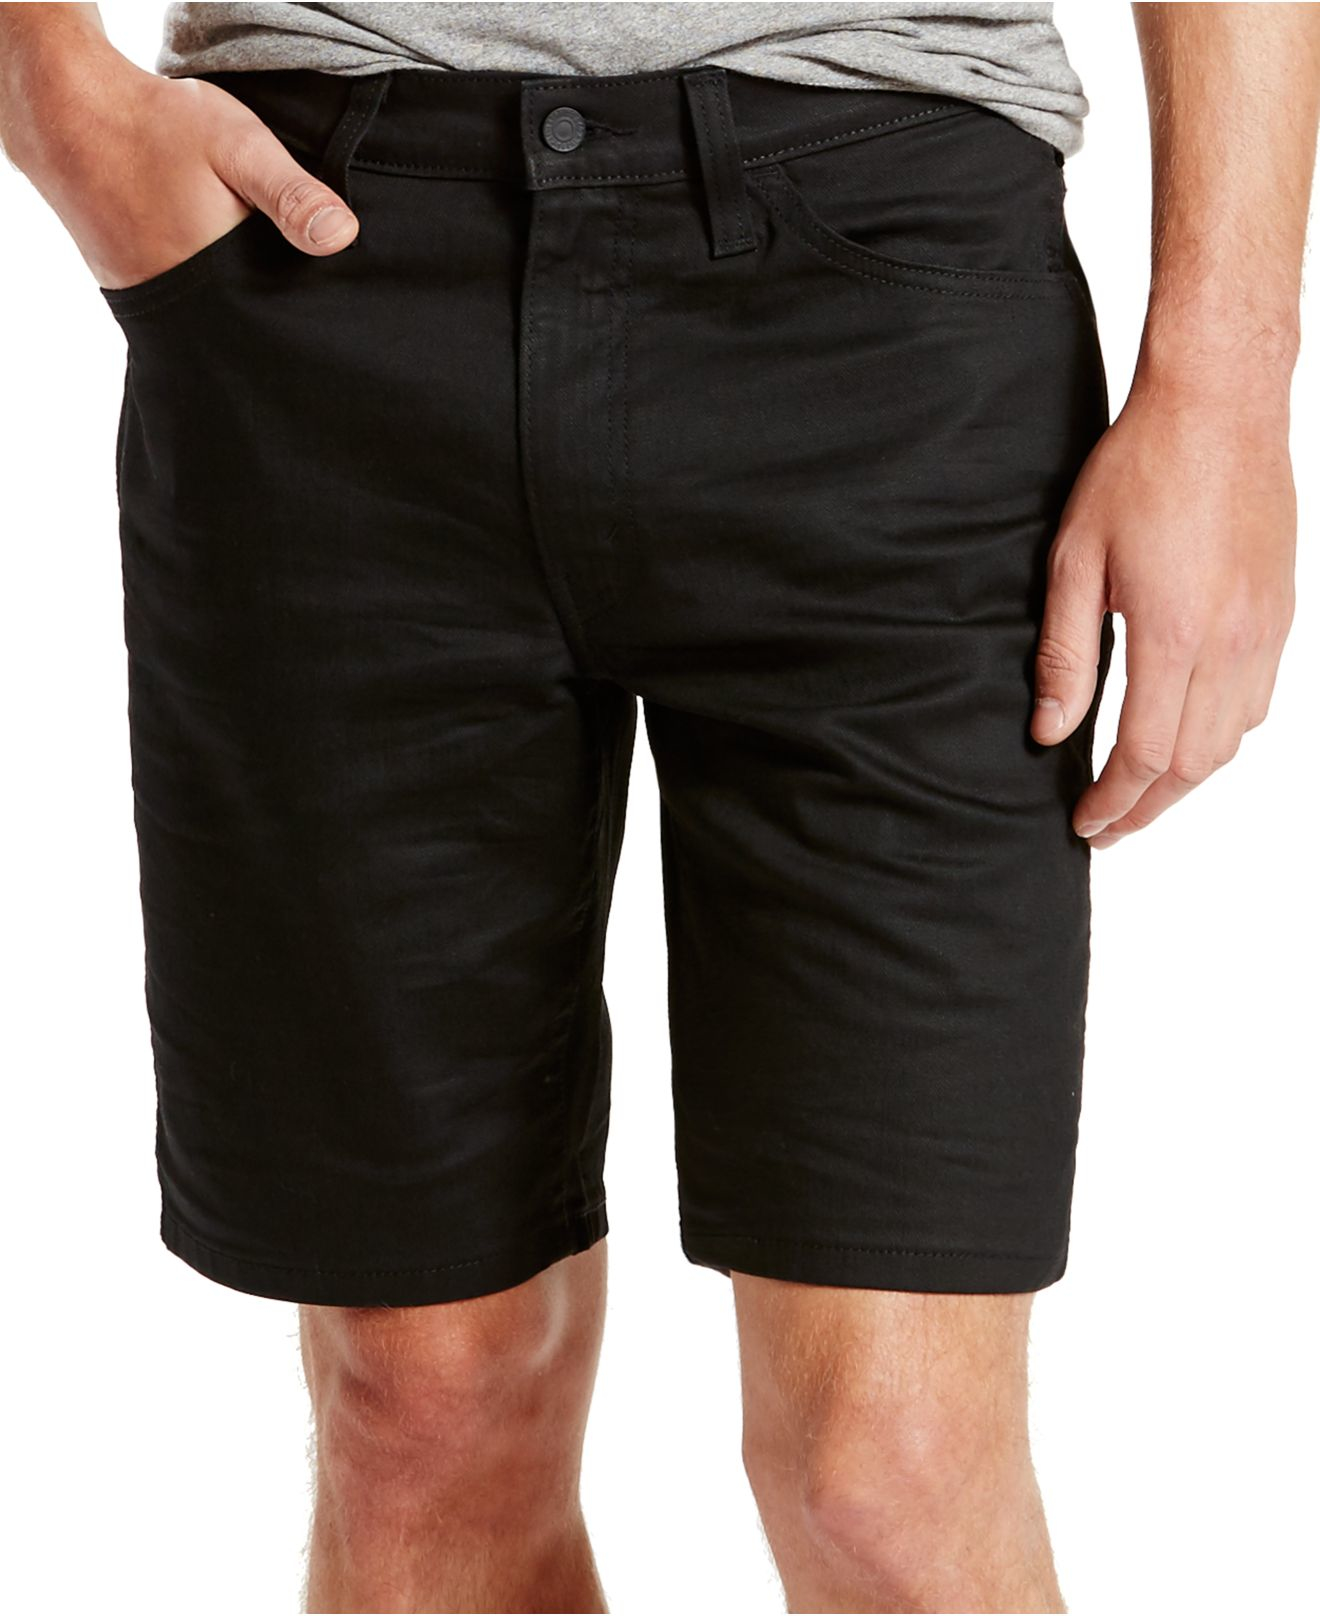 levis shorts 541